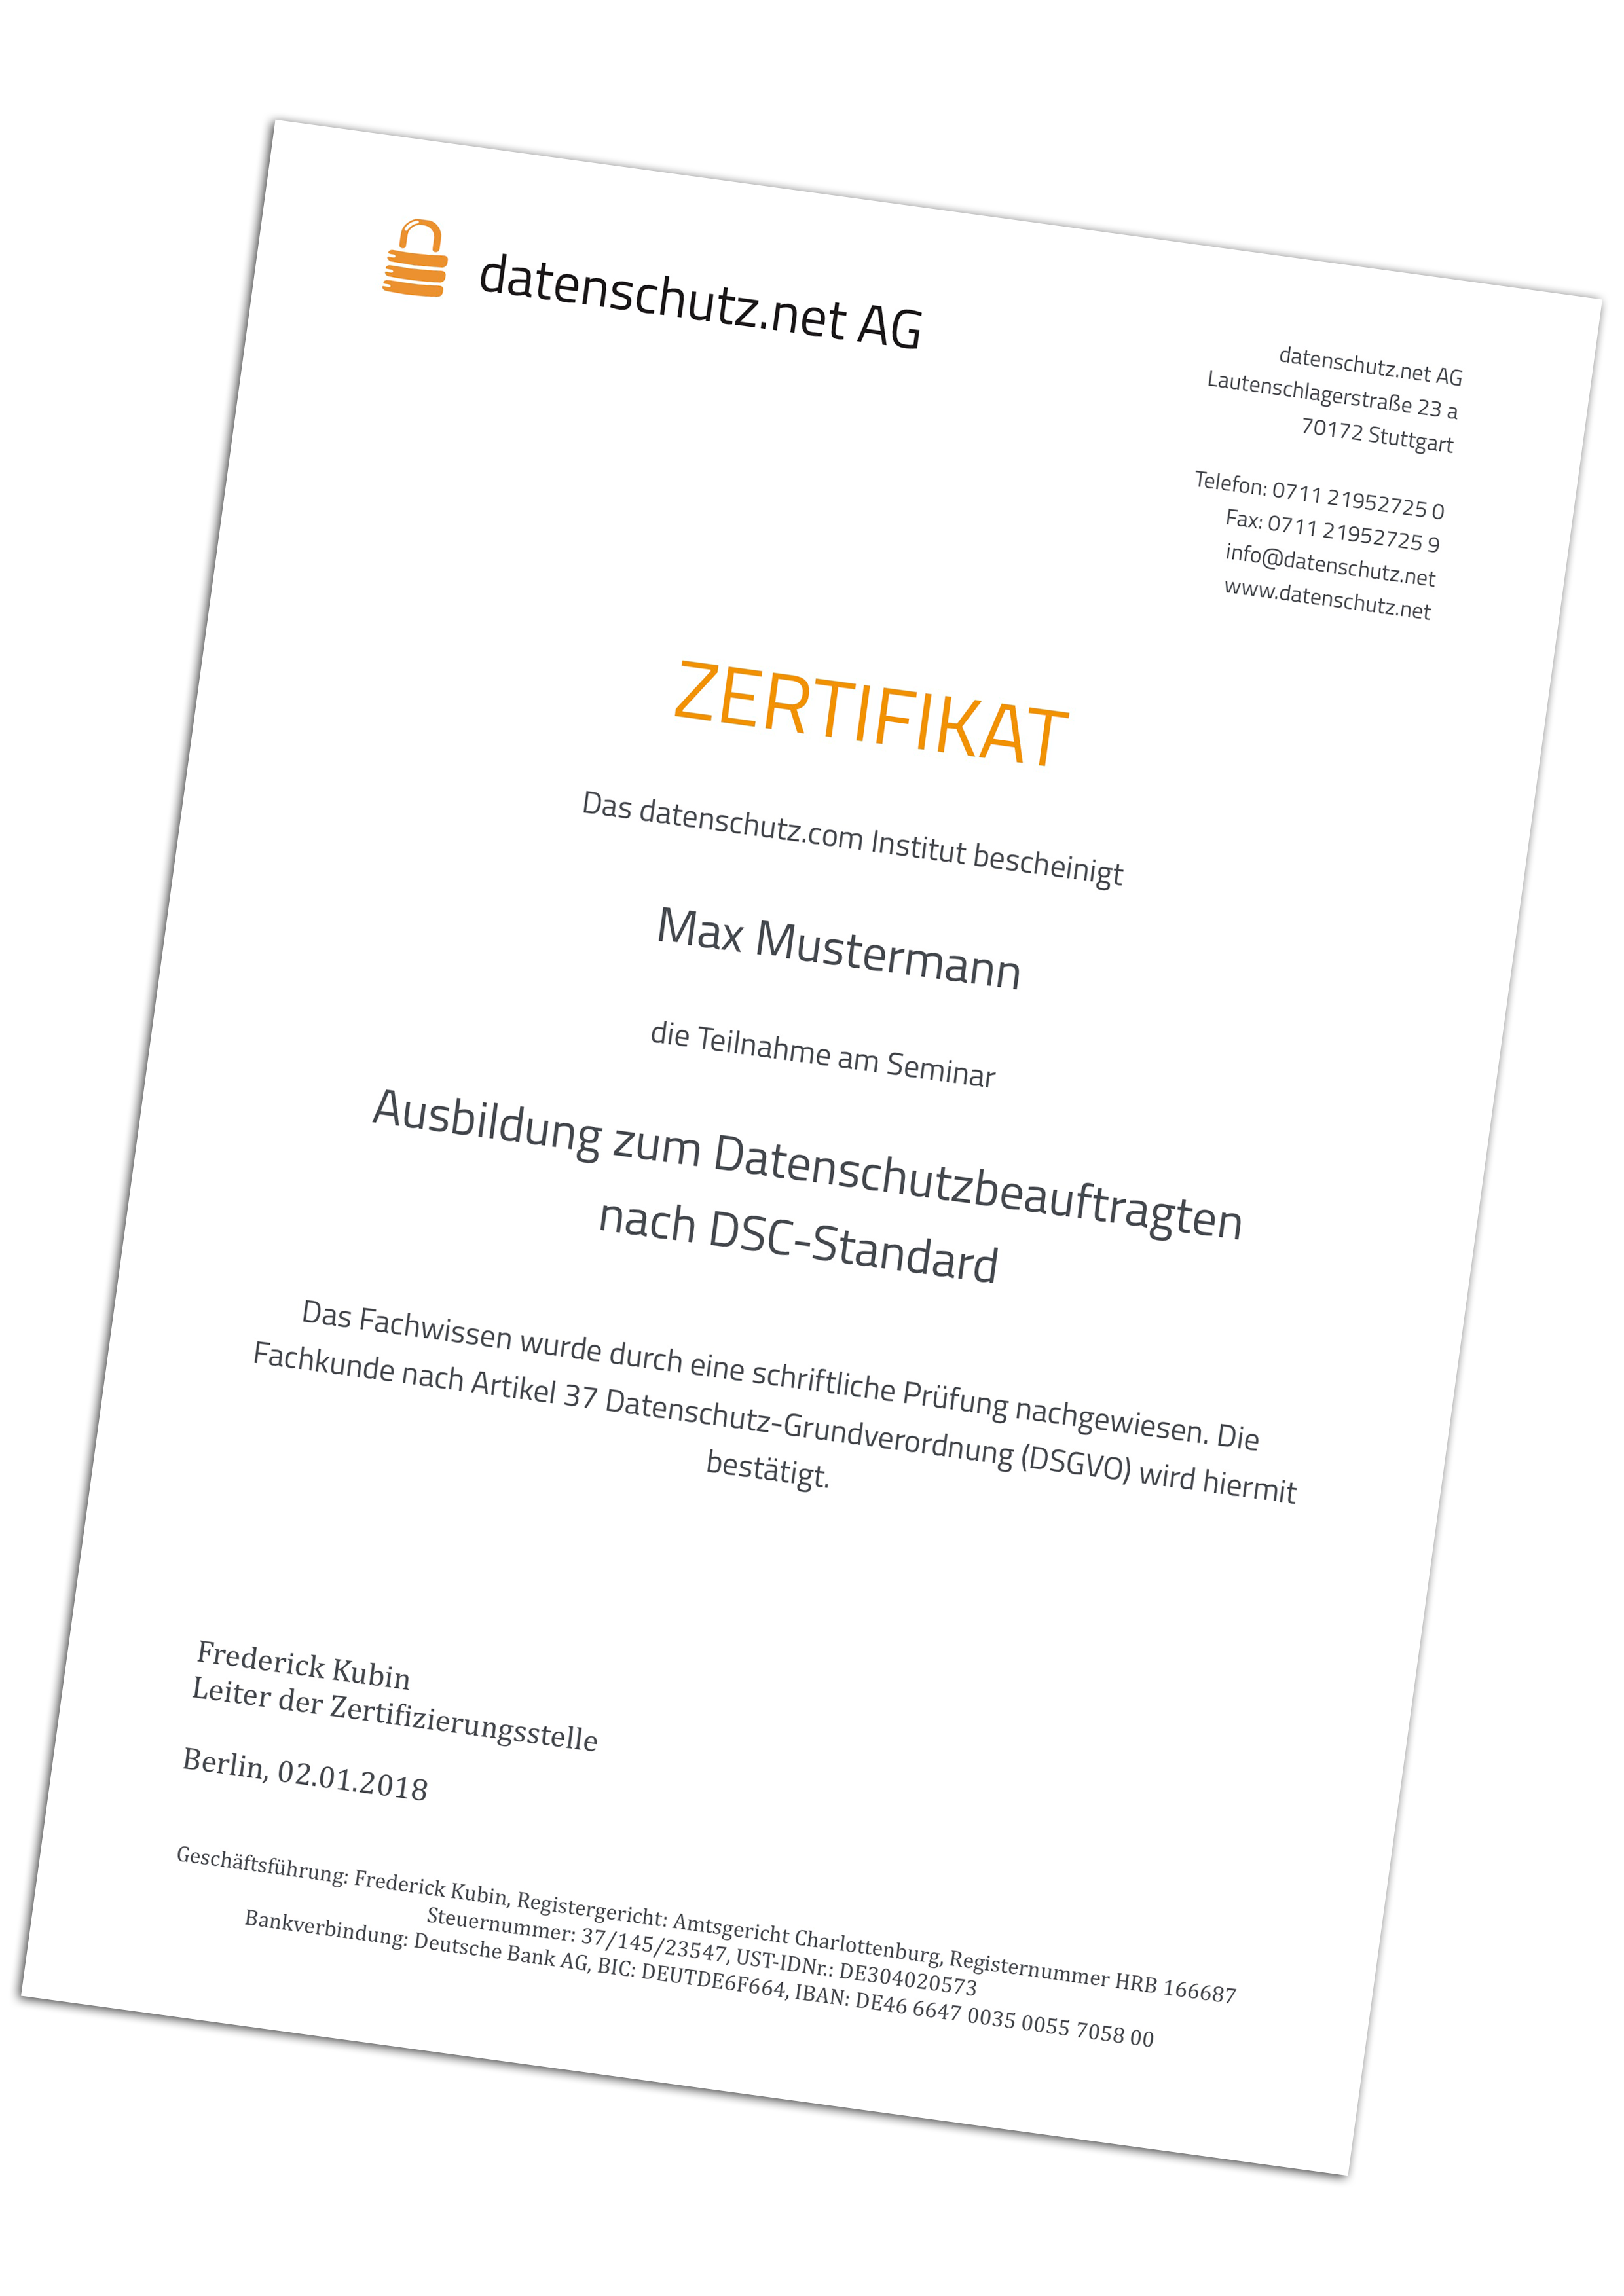 Zertifikat datenschutz.net